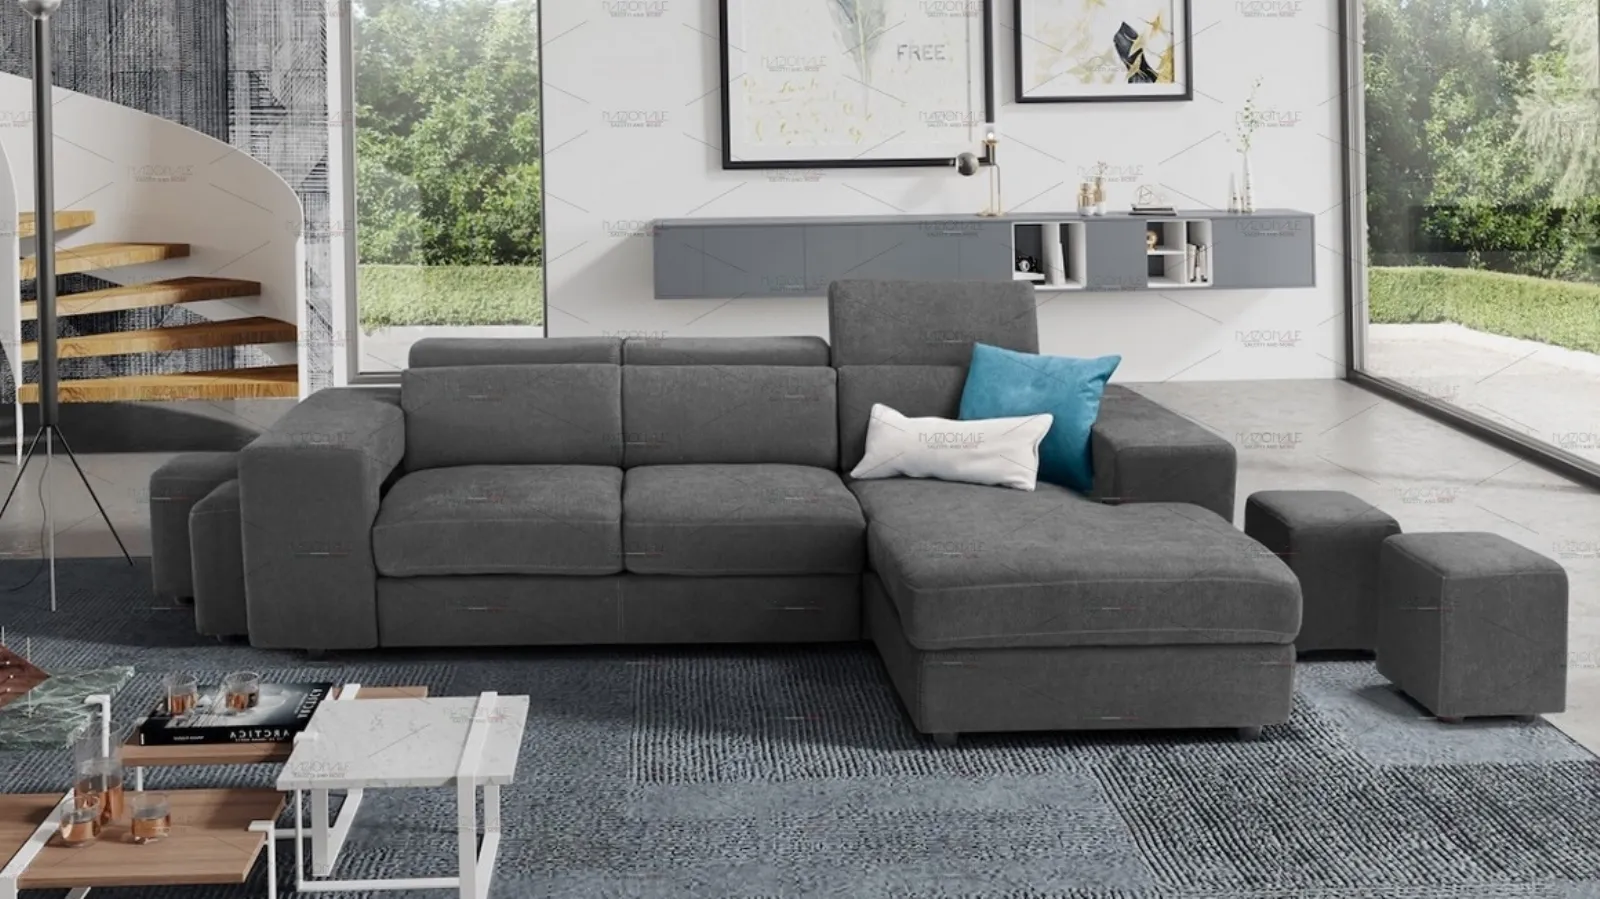 Perché scegliere un divano con pouf estraibile per il proprio salotto